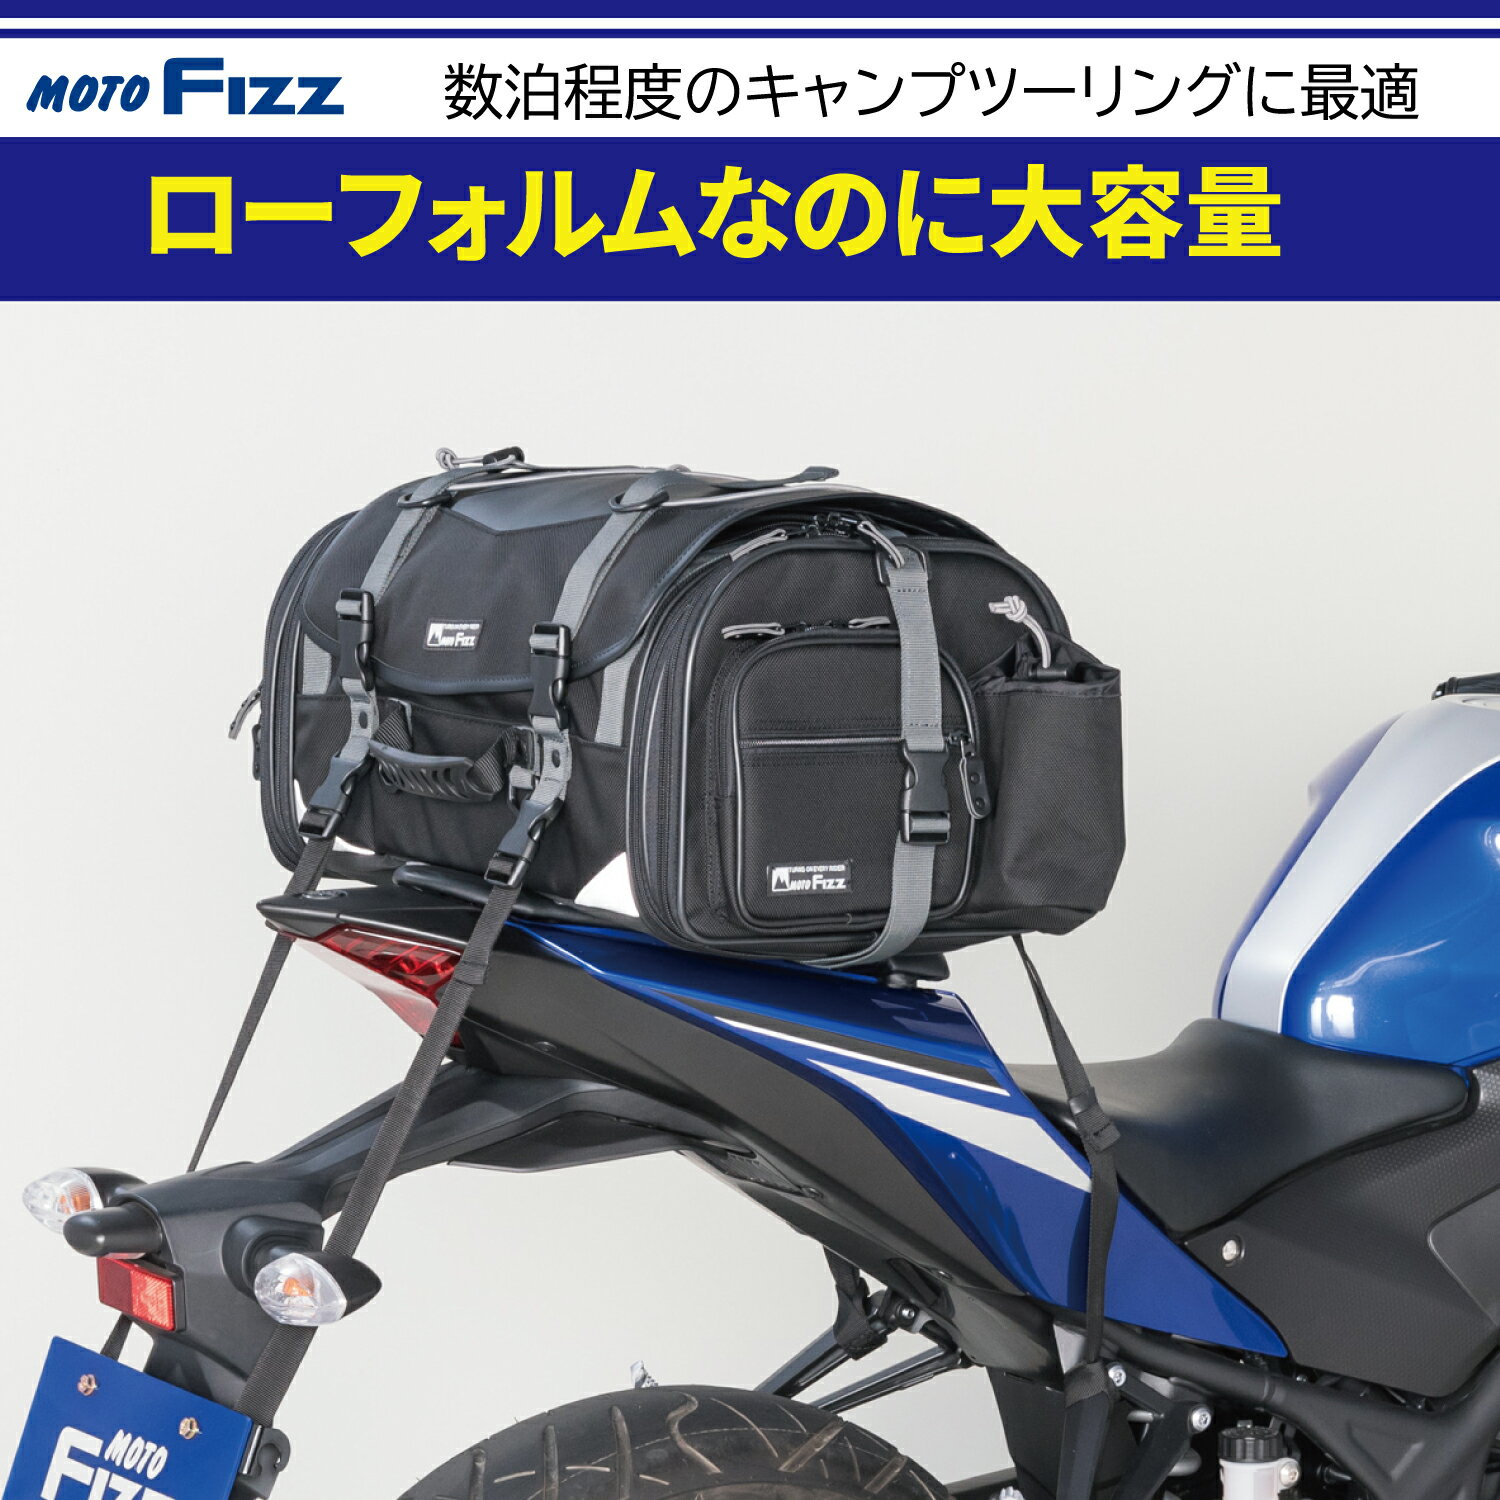 タナックス TANAX MOTOFIZZ バイク用 ミドルフィールドシートバッグ アーバンブルー 容量 29-40L MFK-275 2